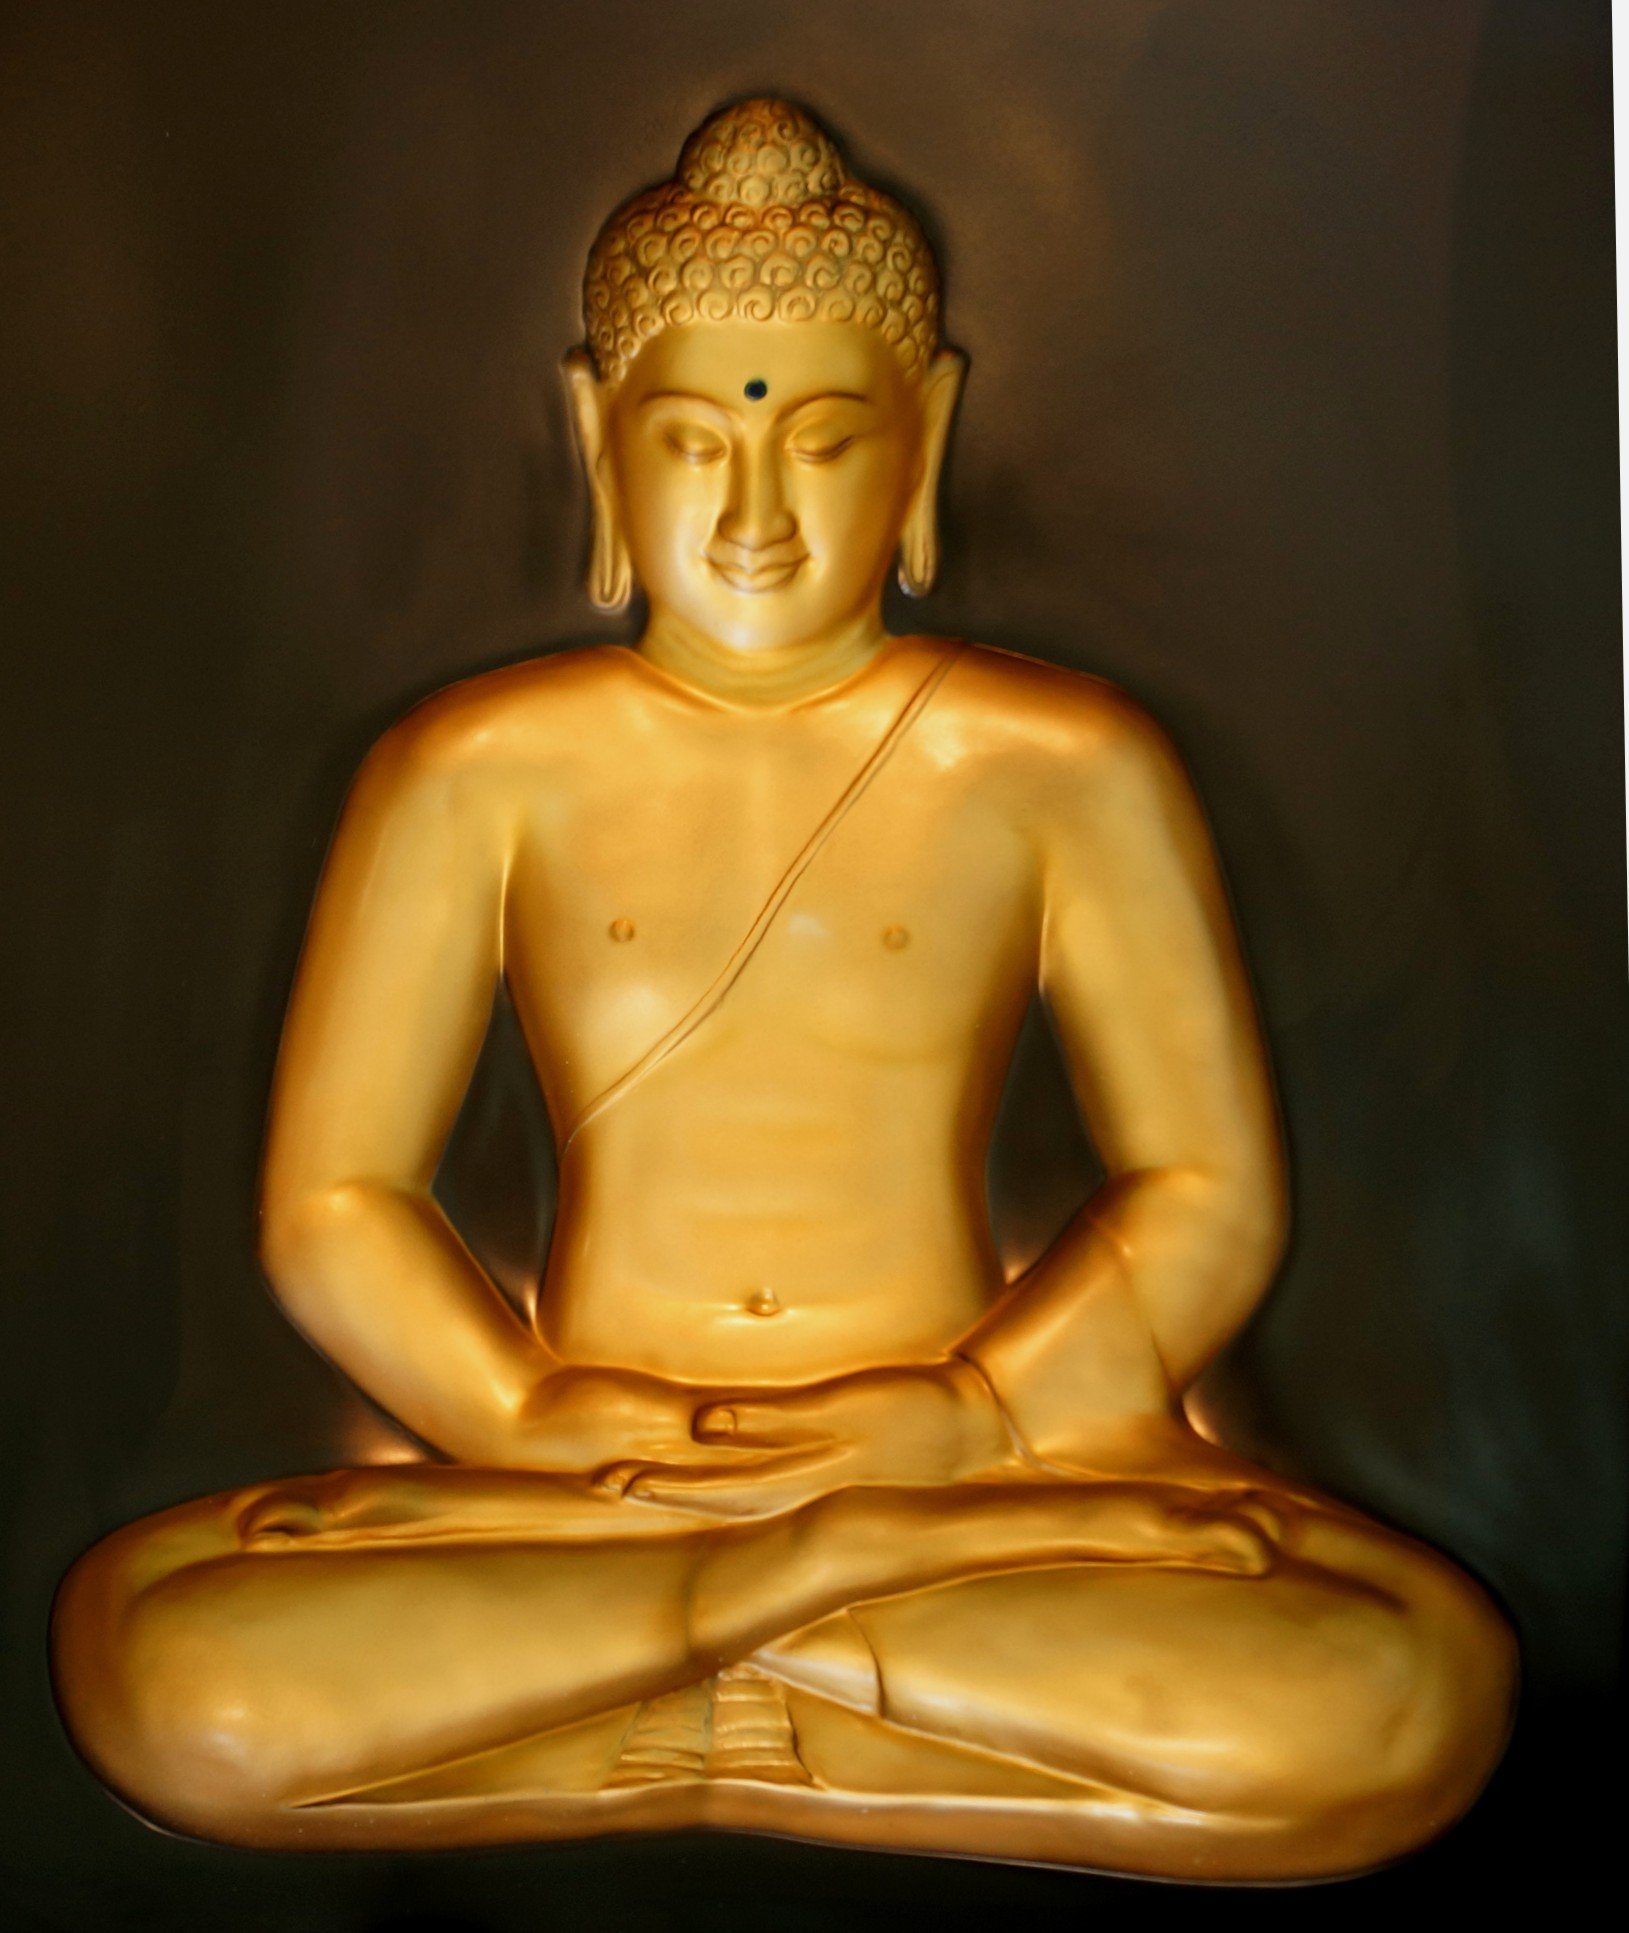 Guru-Shop Buddhafigur 3-D Buddha Hologramm Bild - Modell 9